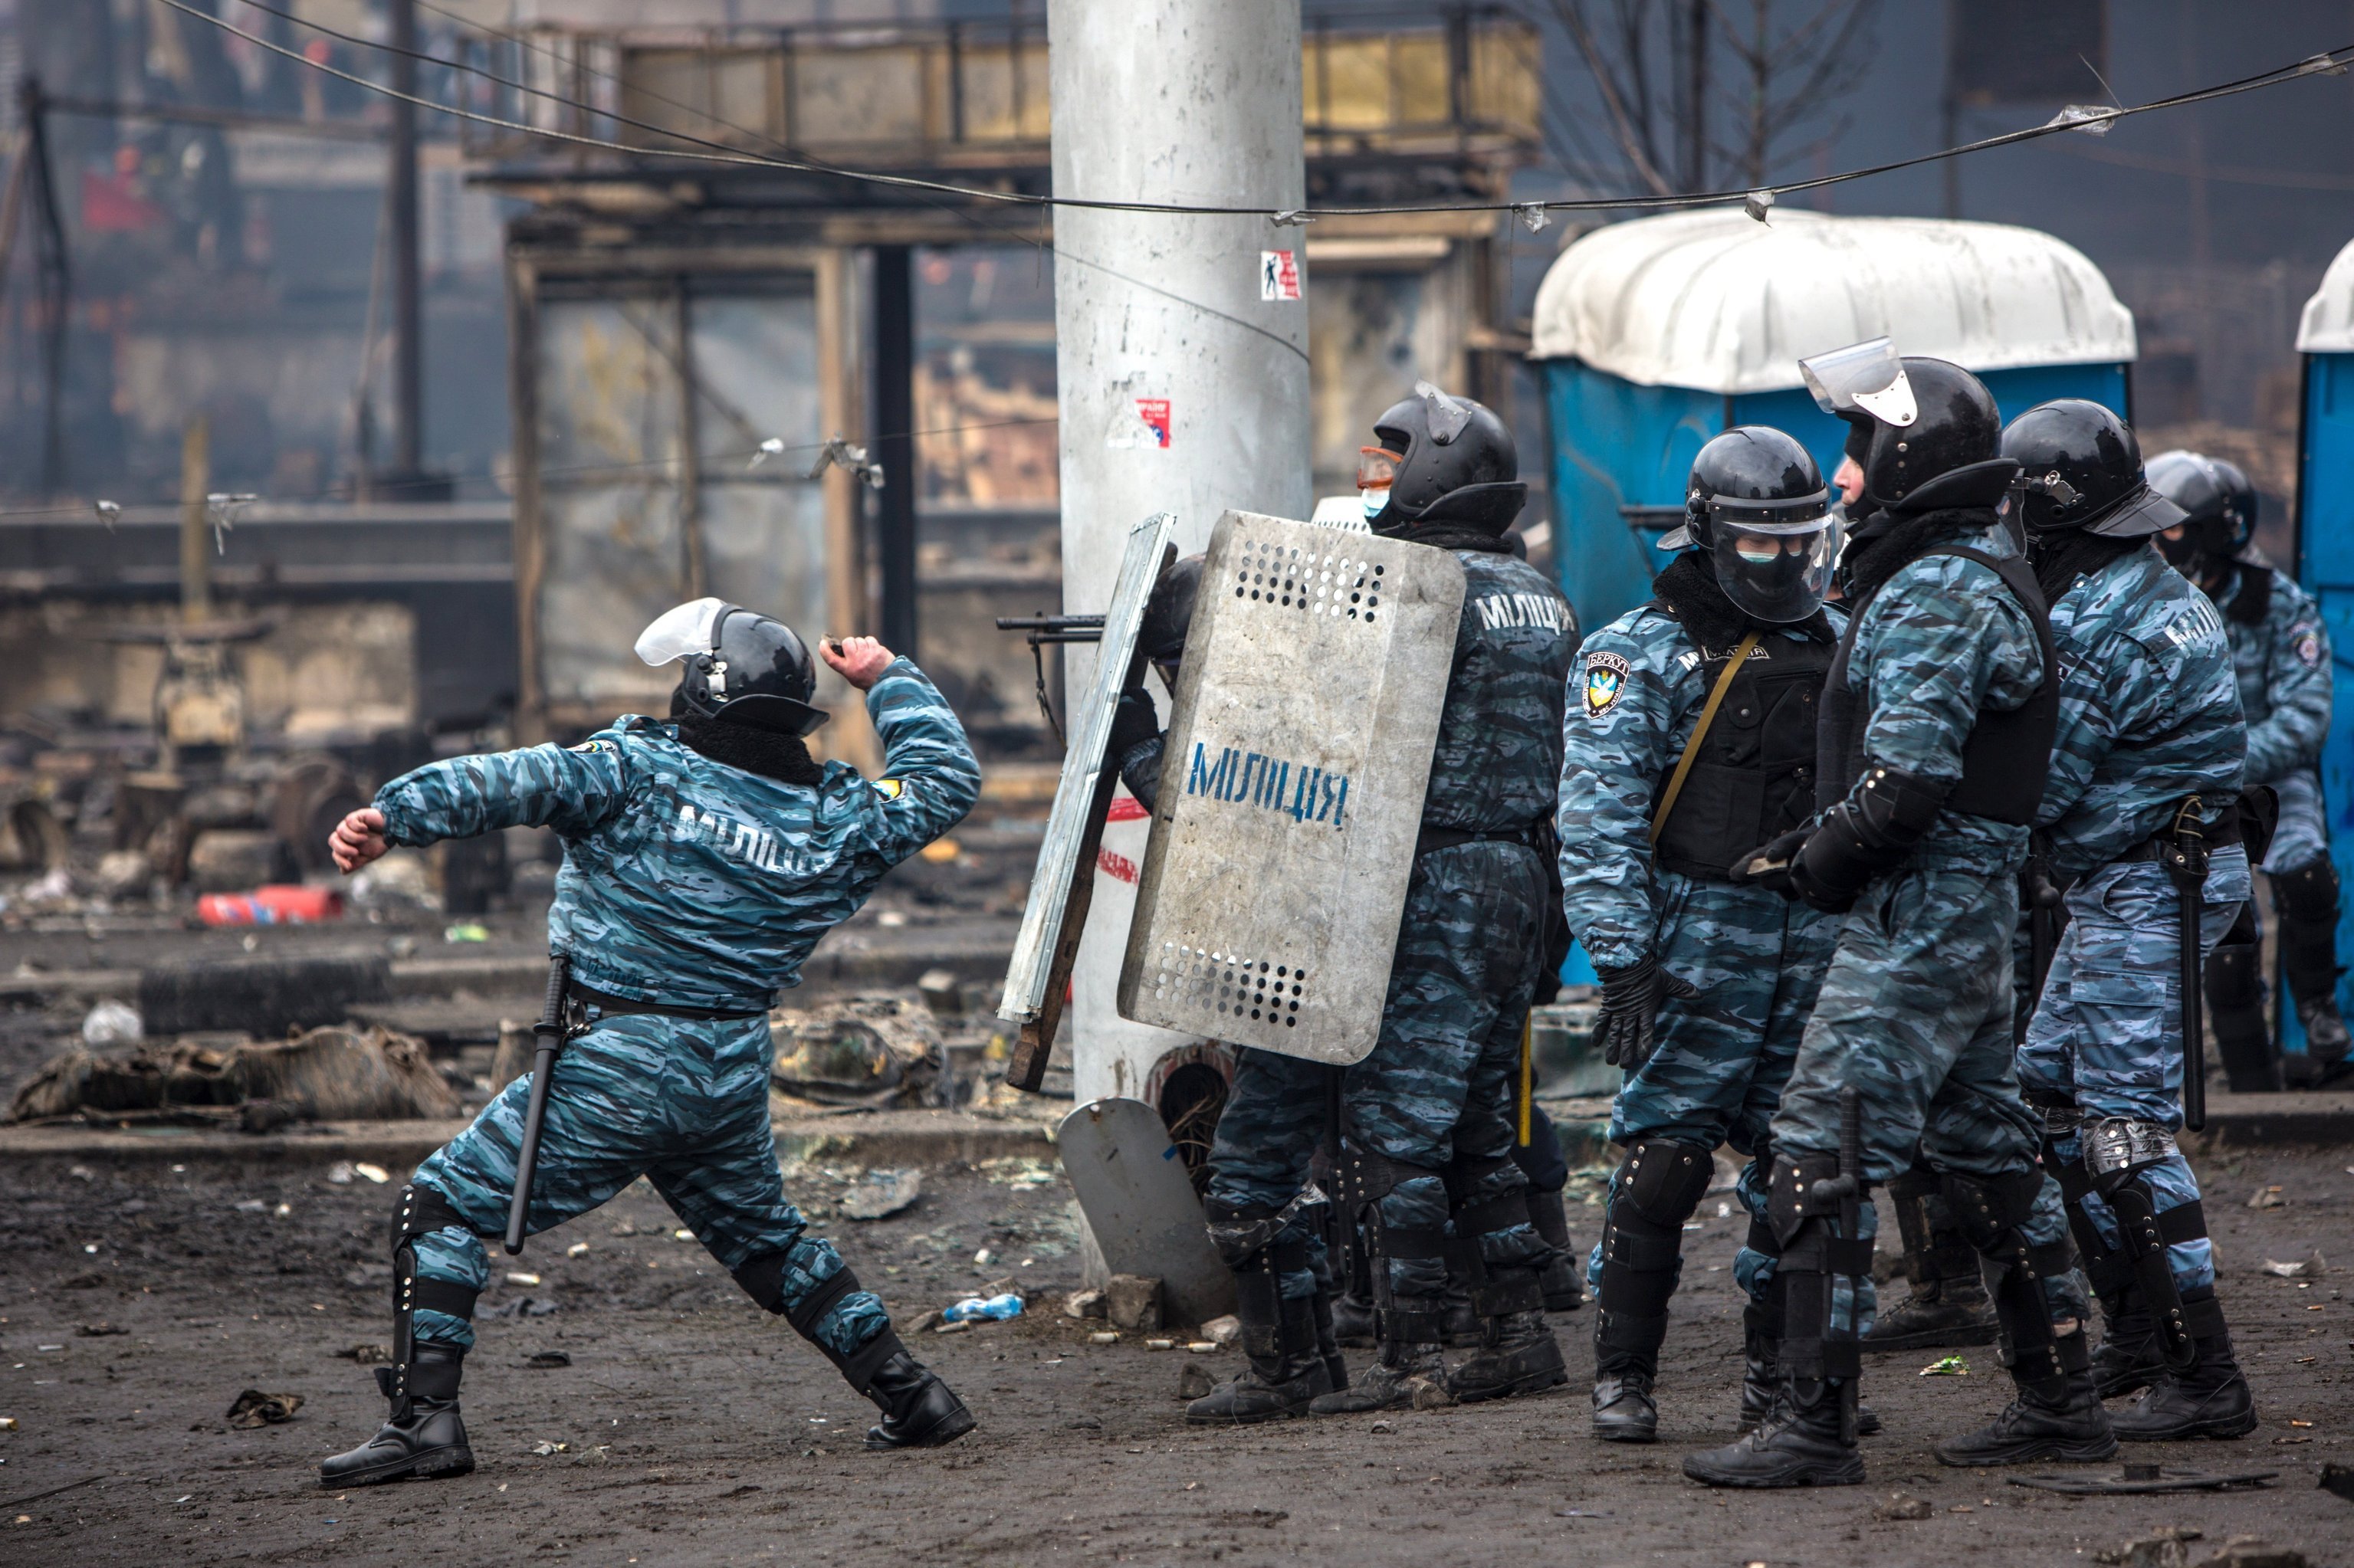 Сотрудники правоохранительных органов во время столкновений с митингующими на площади Независимости в Киеве, 19 февраля 2014 года